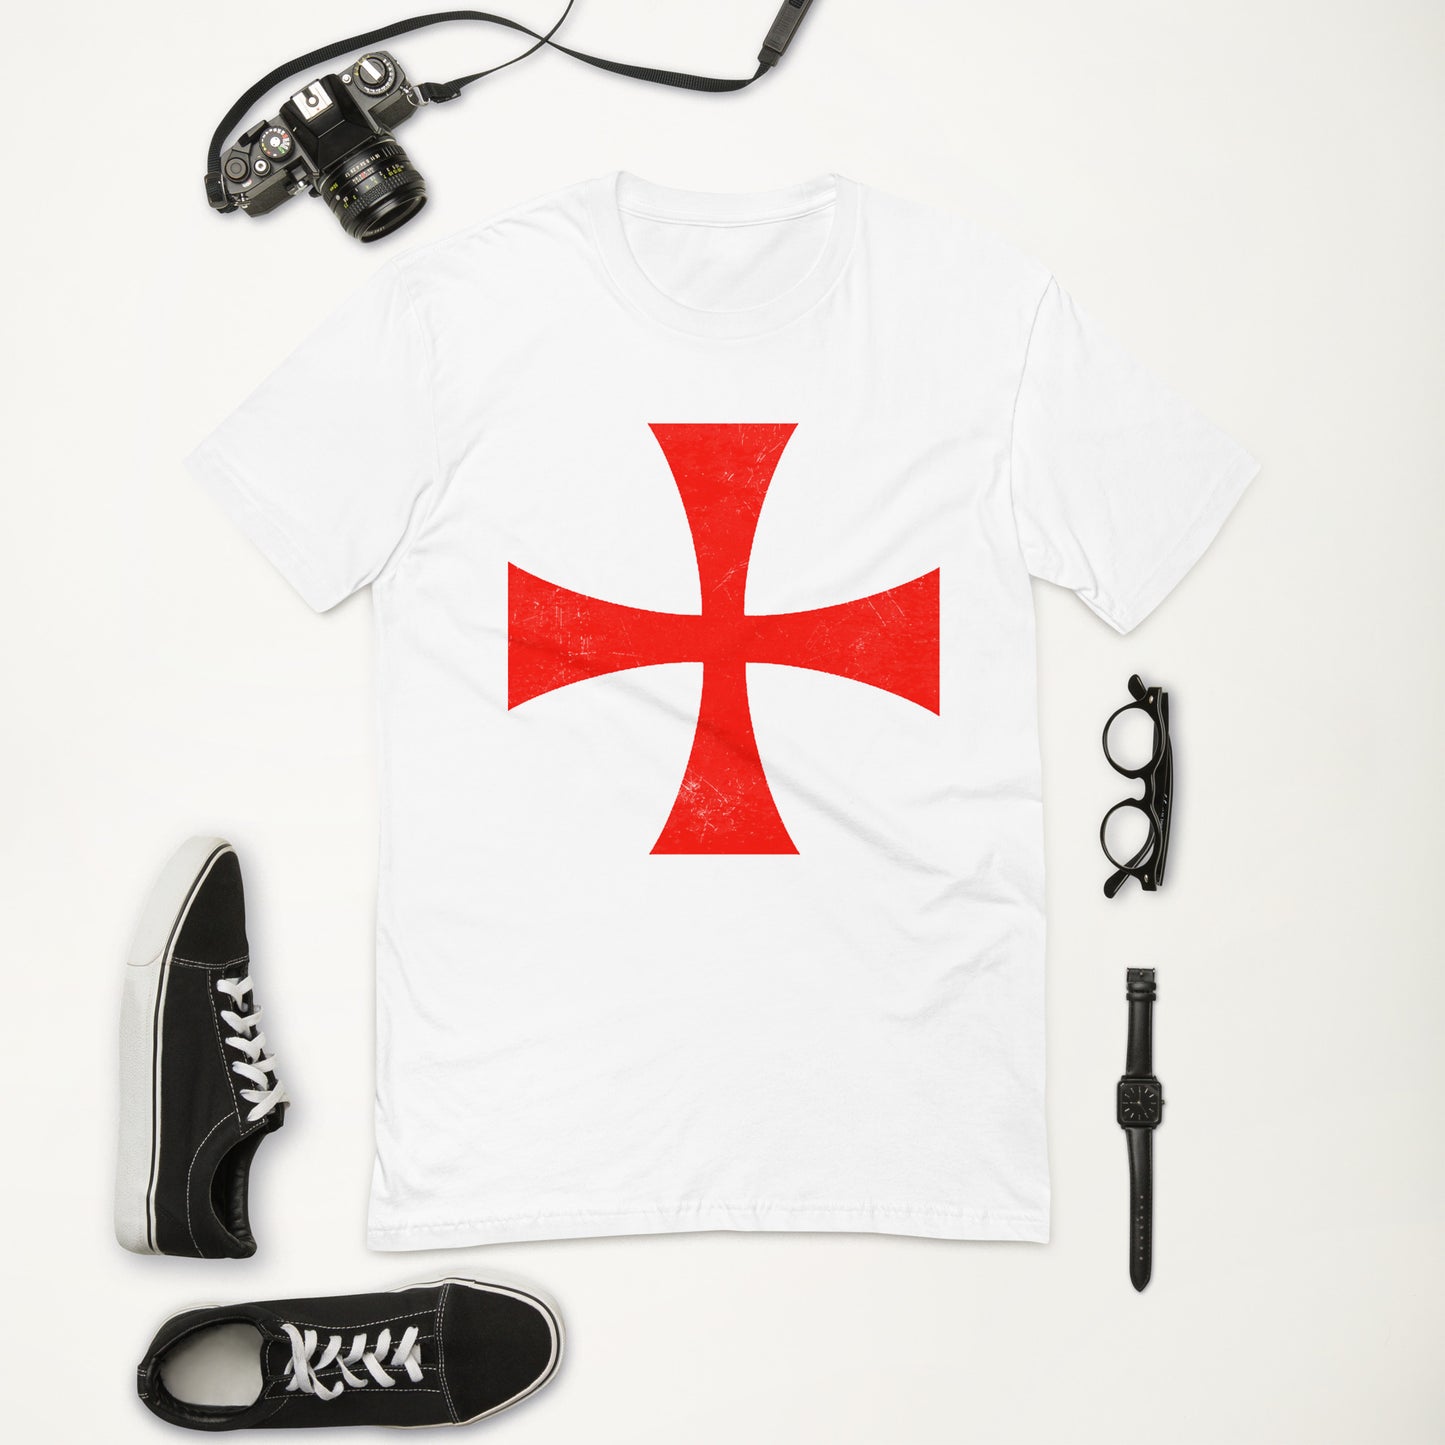 "Battle Worn Templar Cross" - Short Sleeve T-shirt